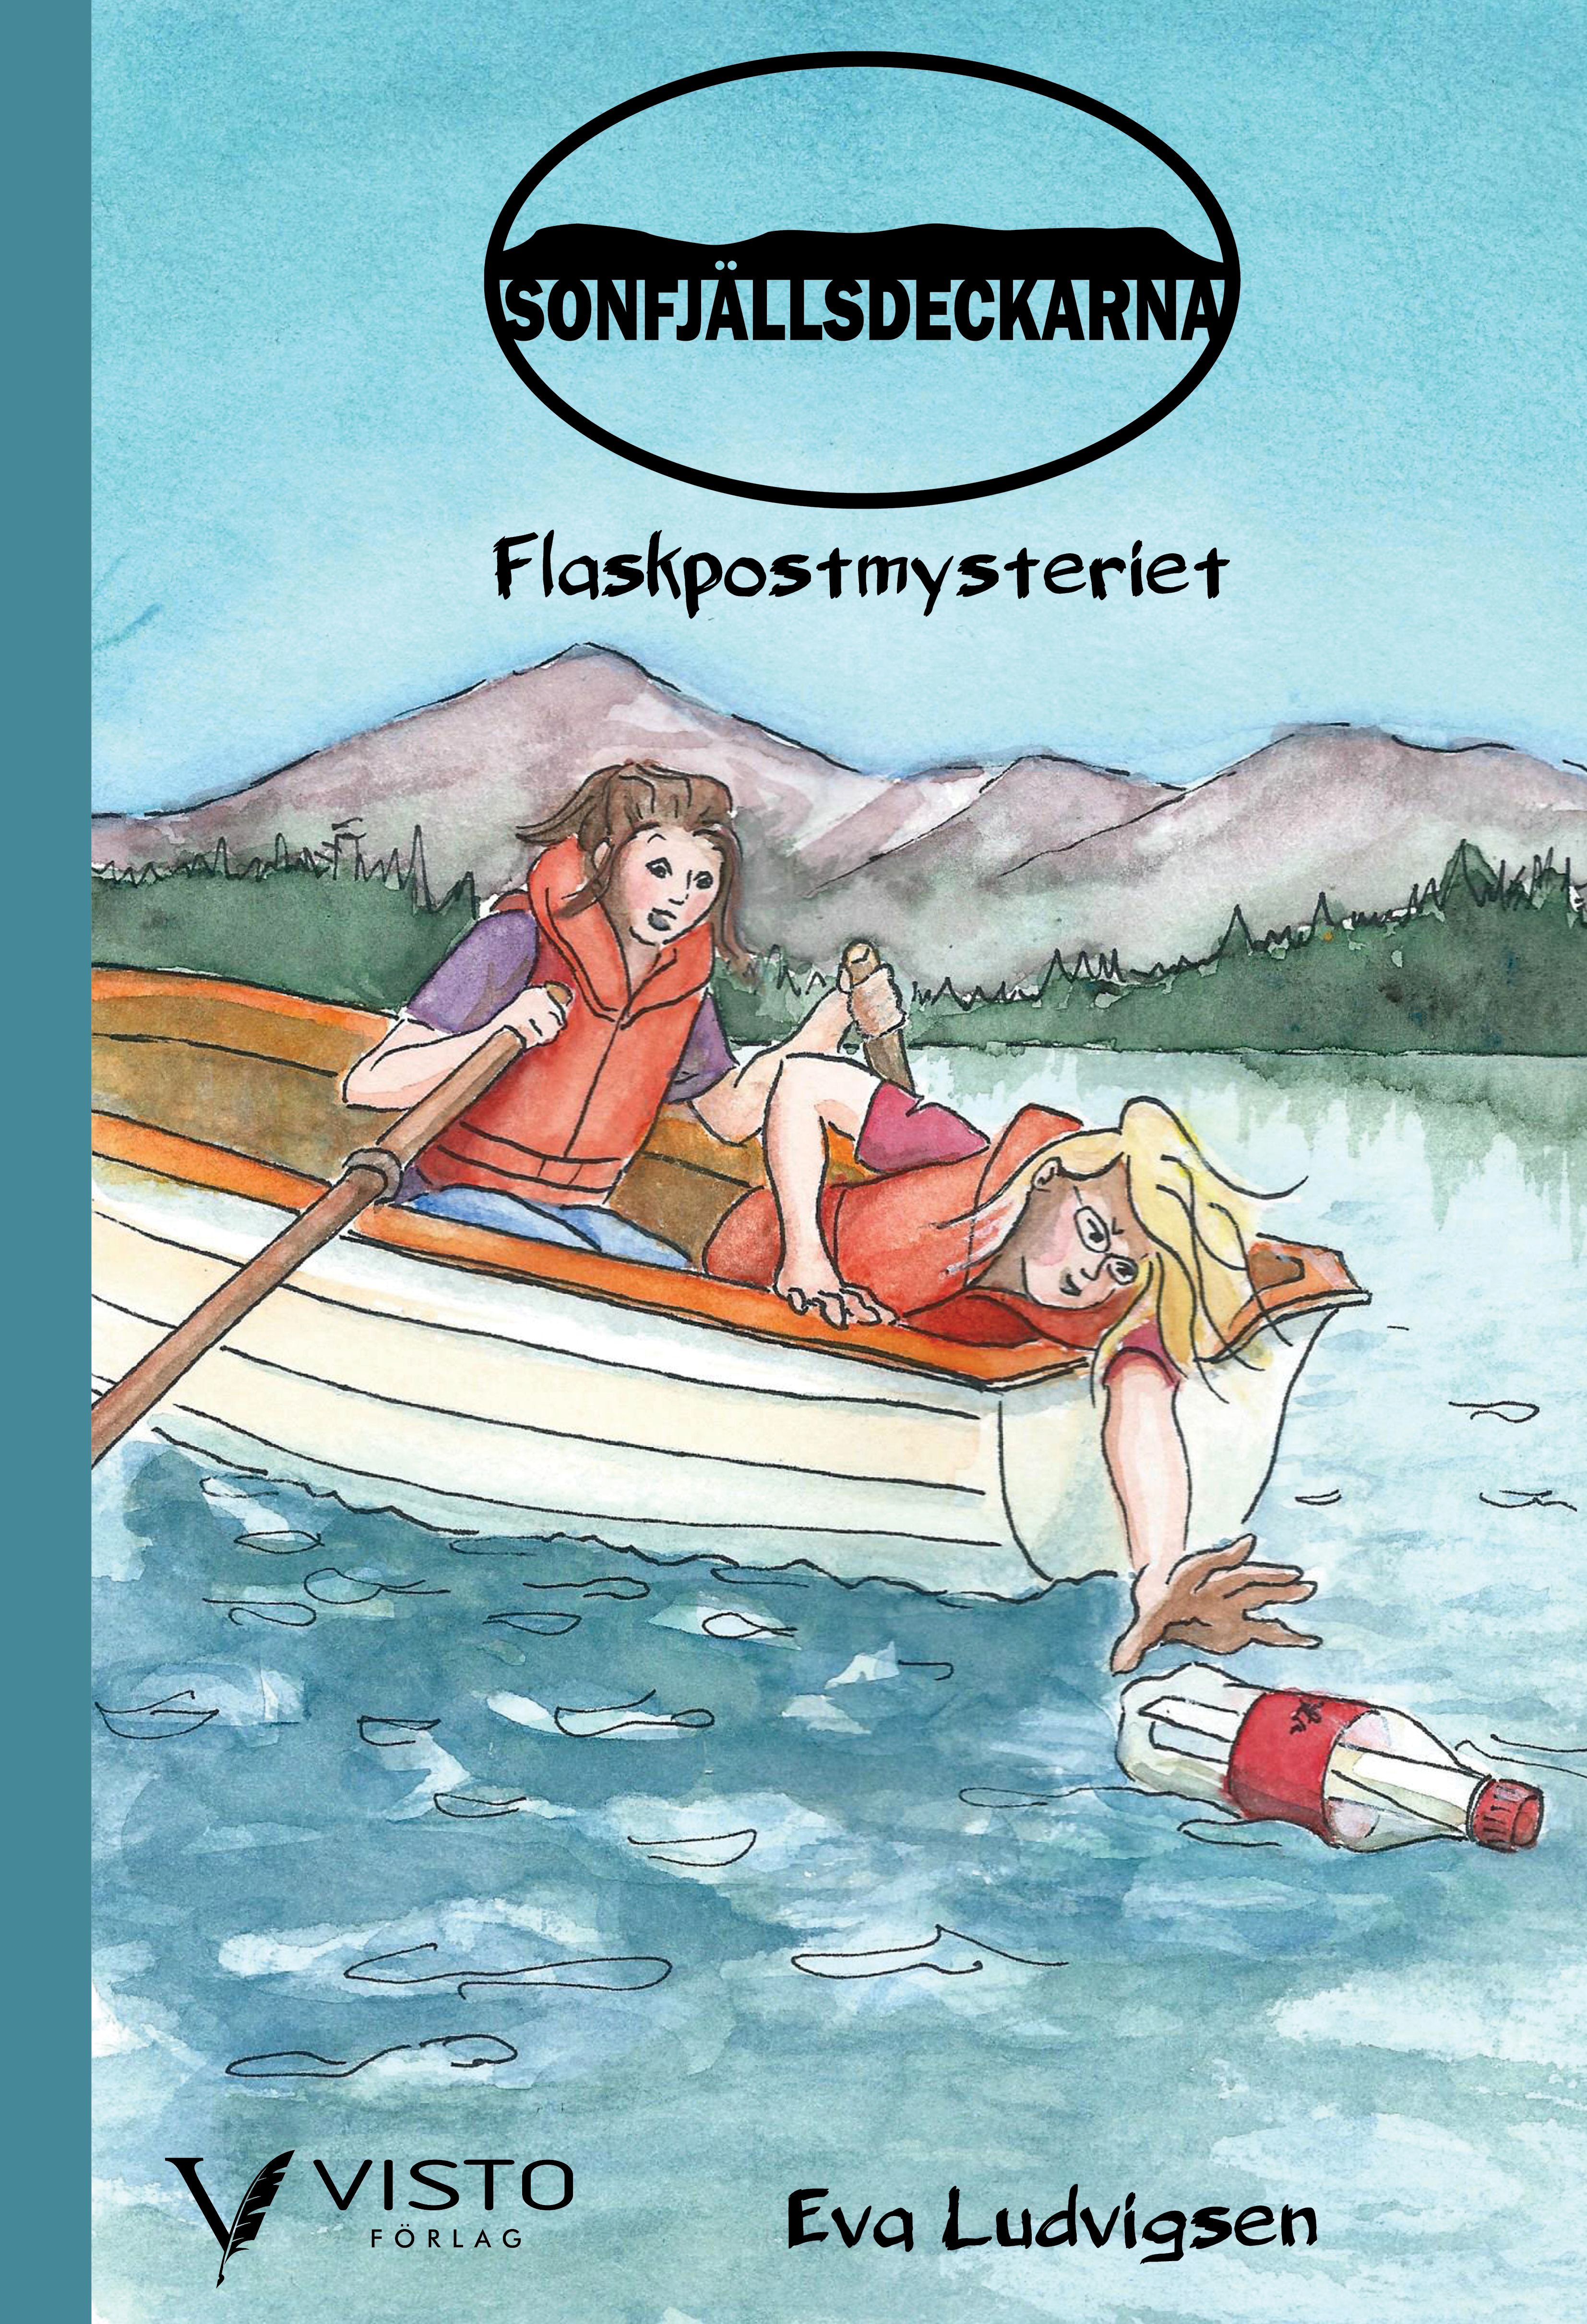 Sonfjällsdeckarna - Flaskpostmysteriet, e-bog af Eva Ludvigsen